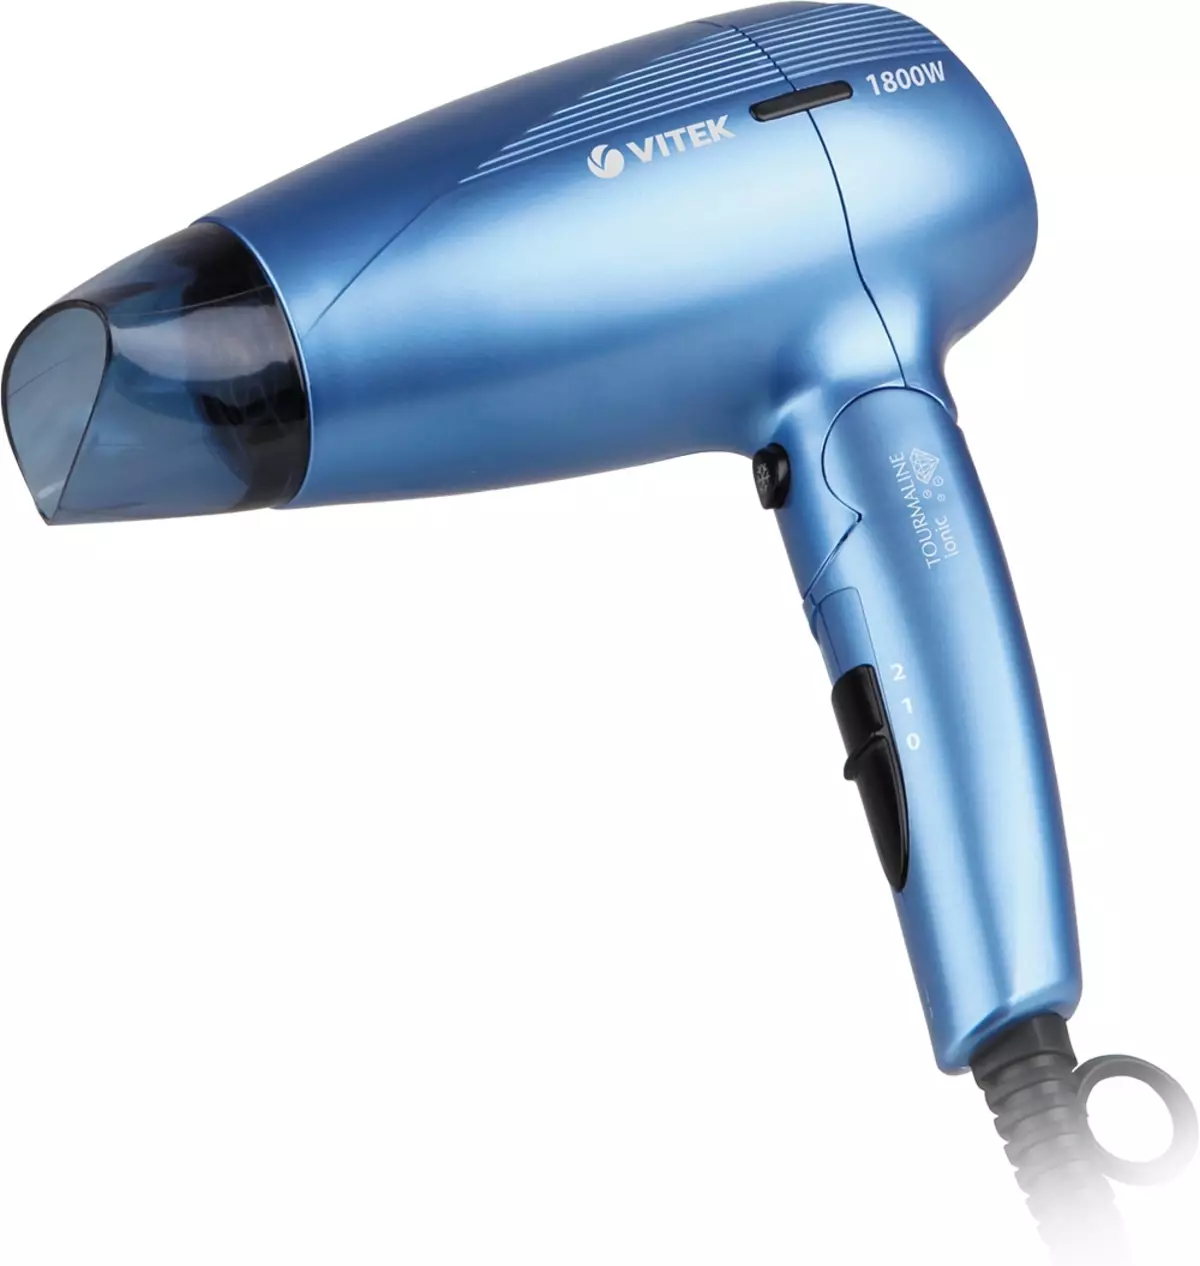 Secadores de cabelo Vitek: modelos com uma escova (pente) para cabelo, difusor e outros. Revisões de revisão 6178_3